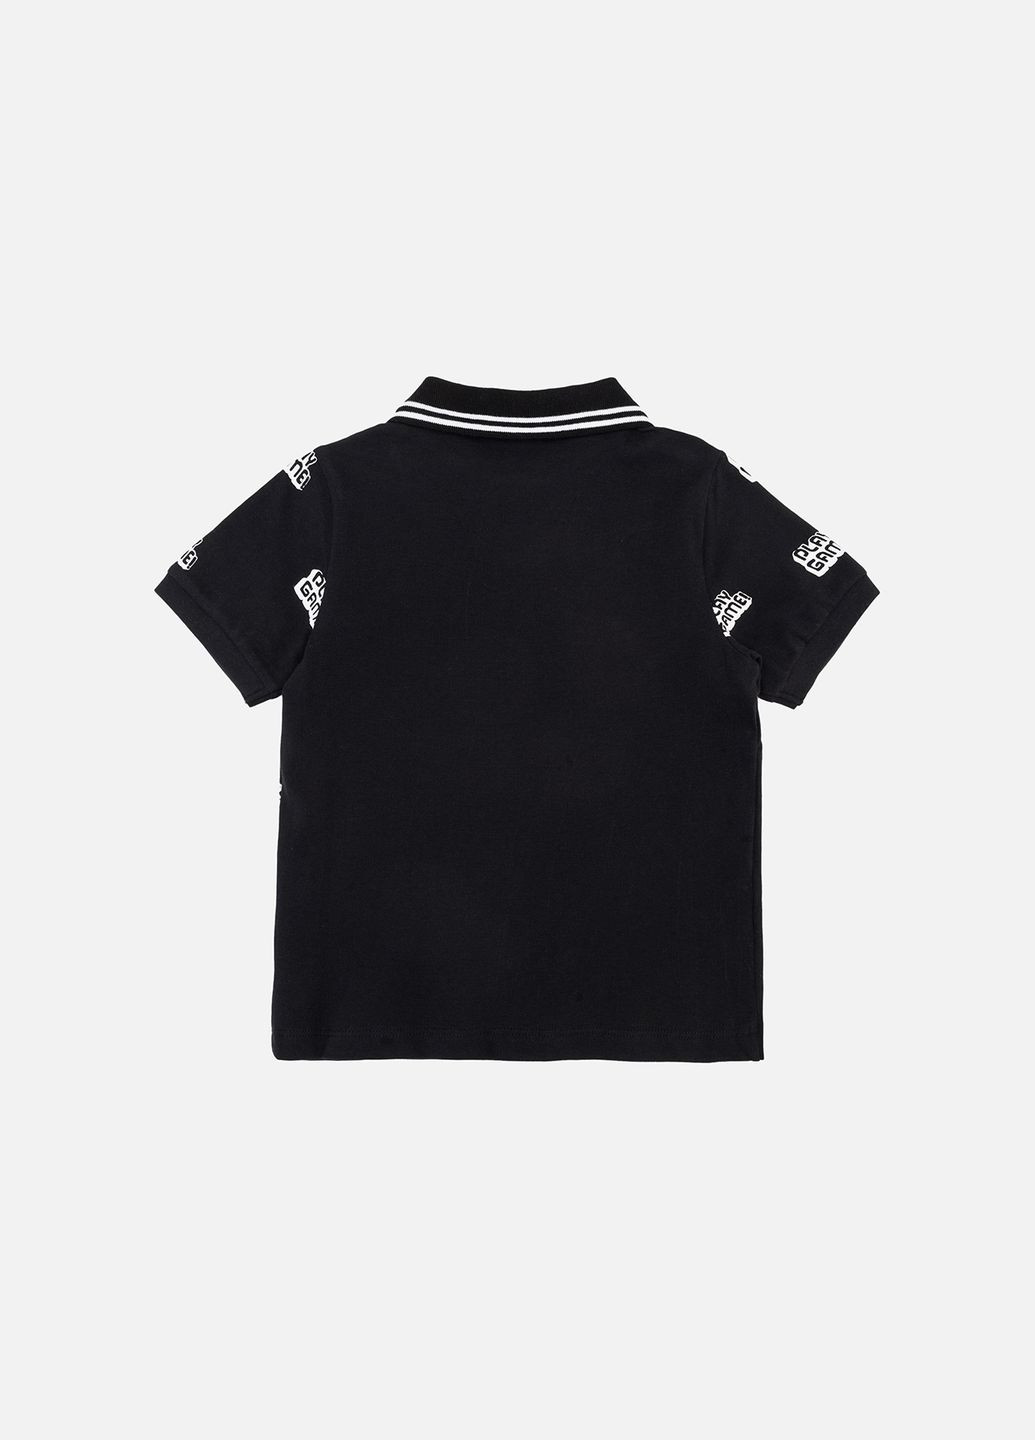 Черная детская футболка-поло с коротким рукавом для мальчиков цвет черный цб-00244197 для мальчика Tuffy